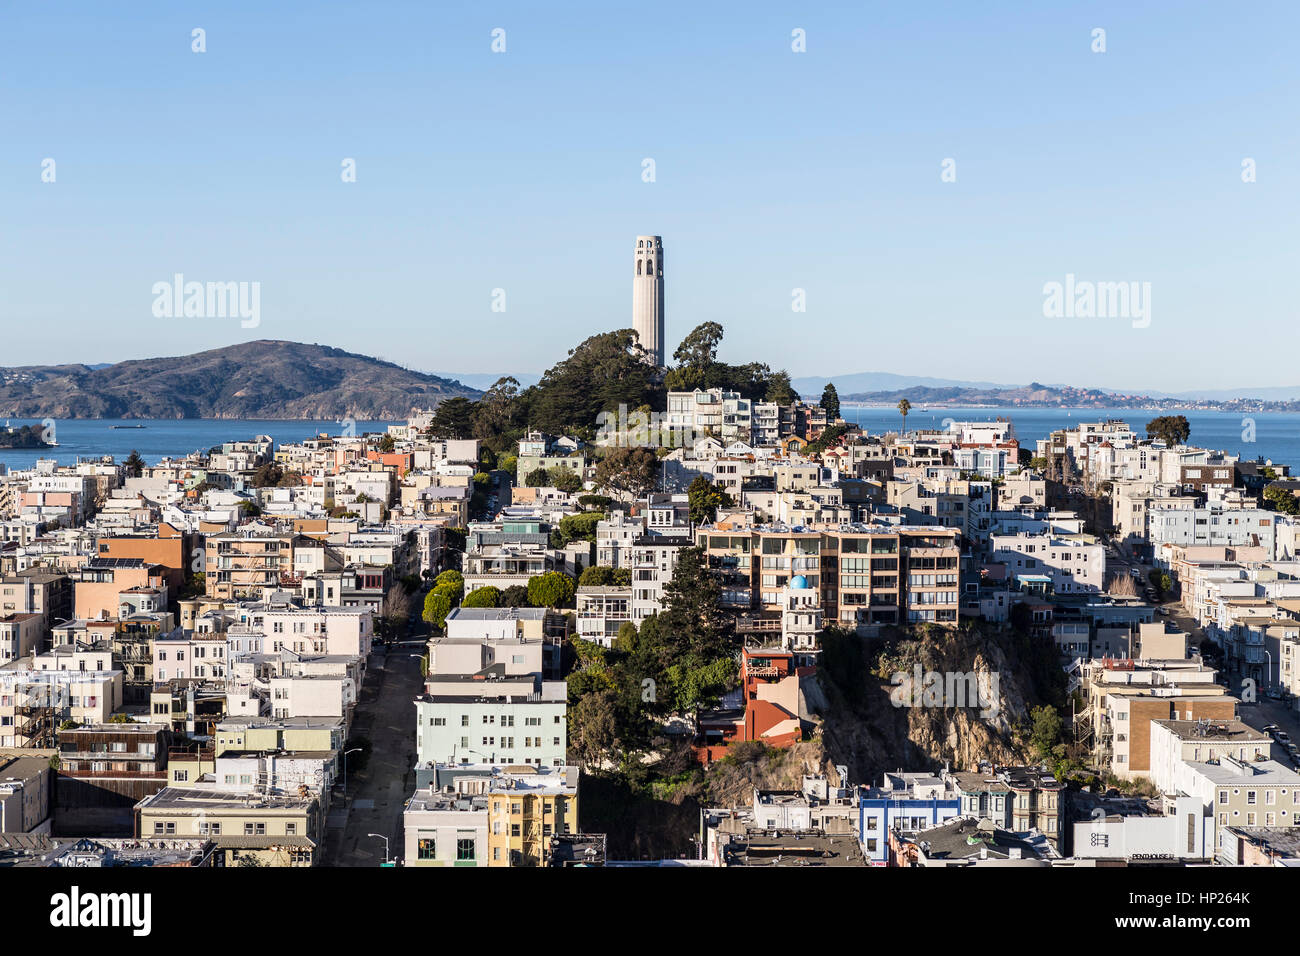 San Francisco, Californie, USA - 13 janvier 2013 : Après-midi vue de la Coit Tower et de Telegraph Hill, près du centre-ville de San Francisco. Banque D'Images